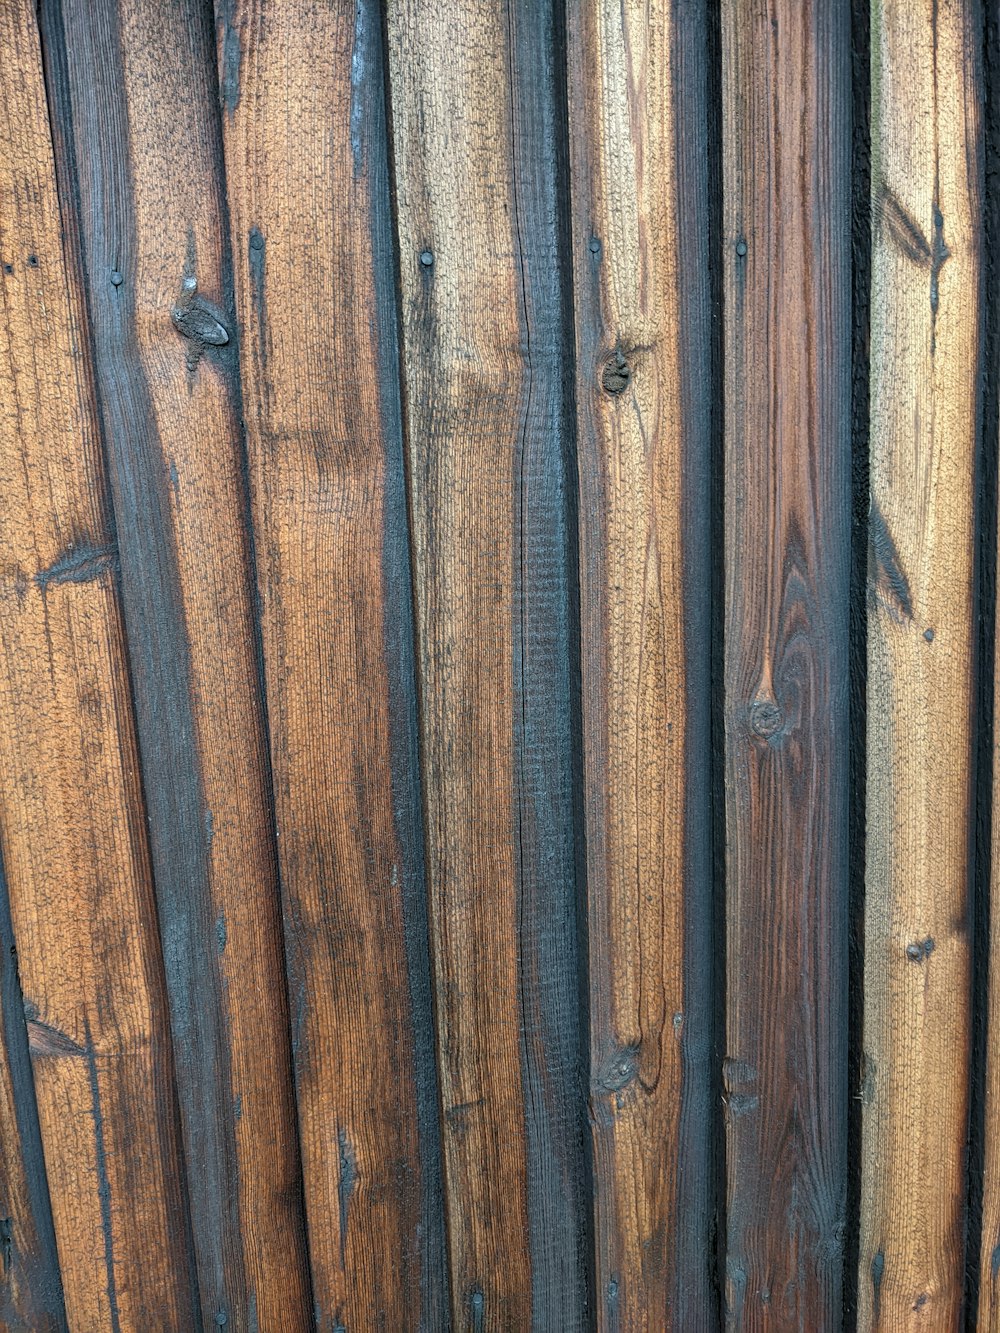 un groupe de planches de bois